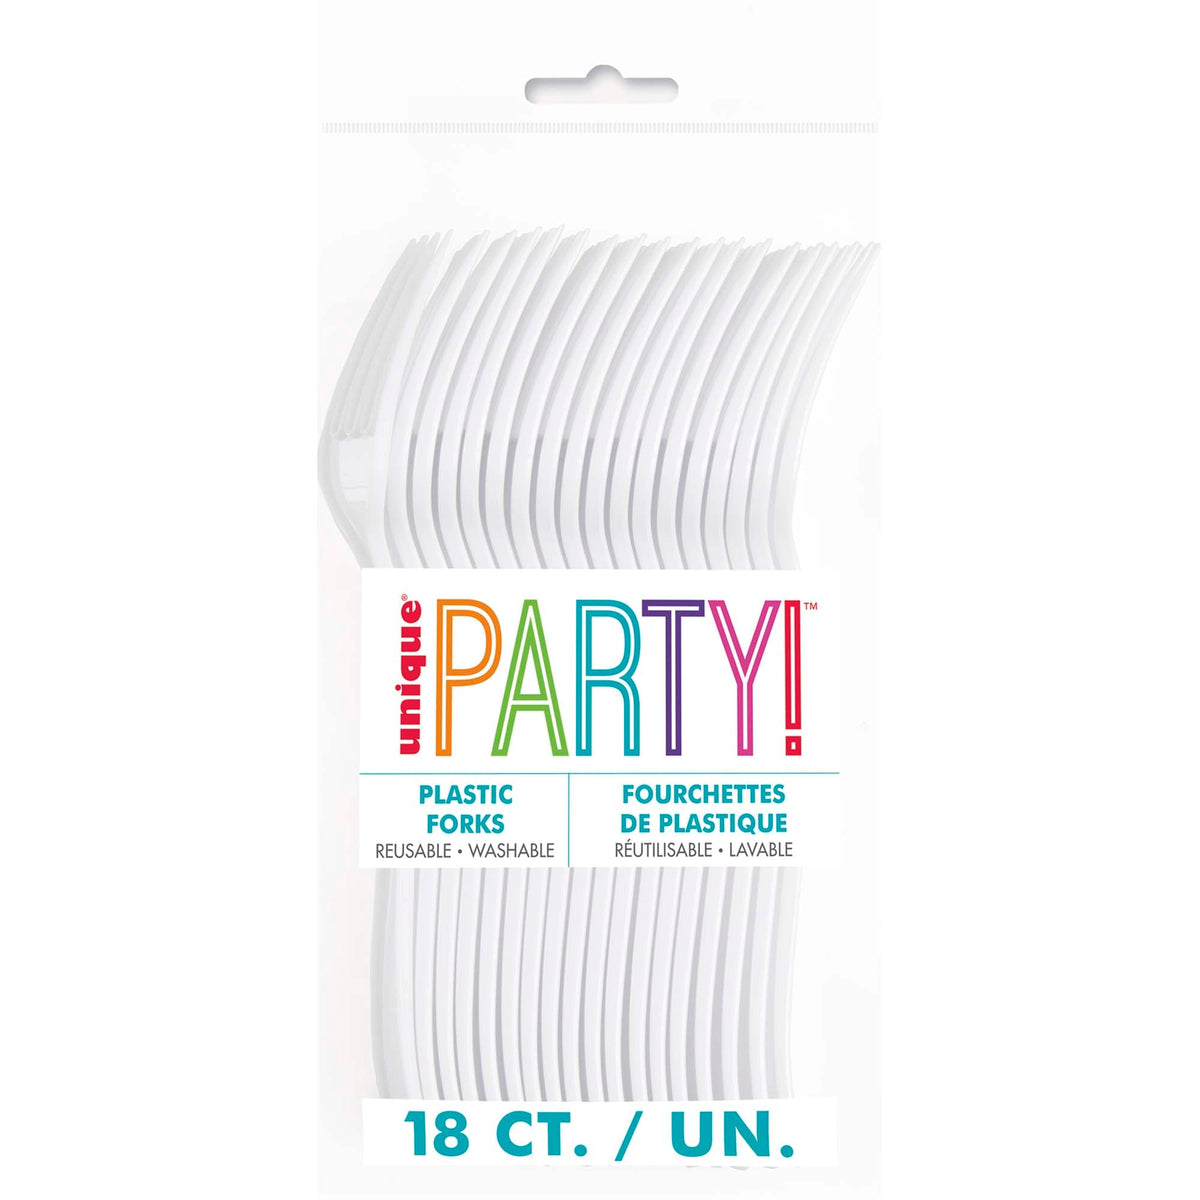 UNIQUE PARTY FAVORS Disposable-Plasticware White Plastic Forks, 18 Count 011179394838